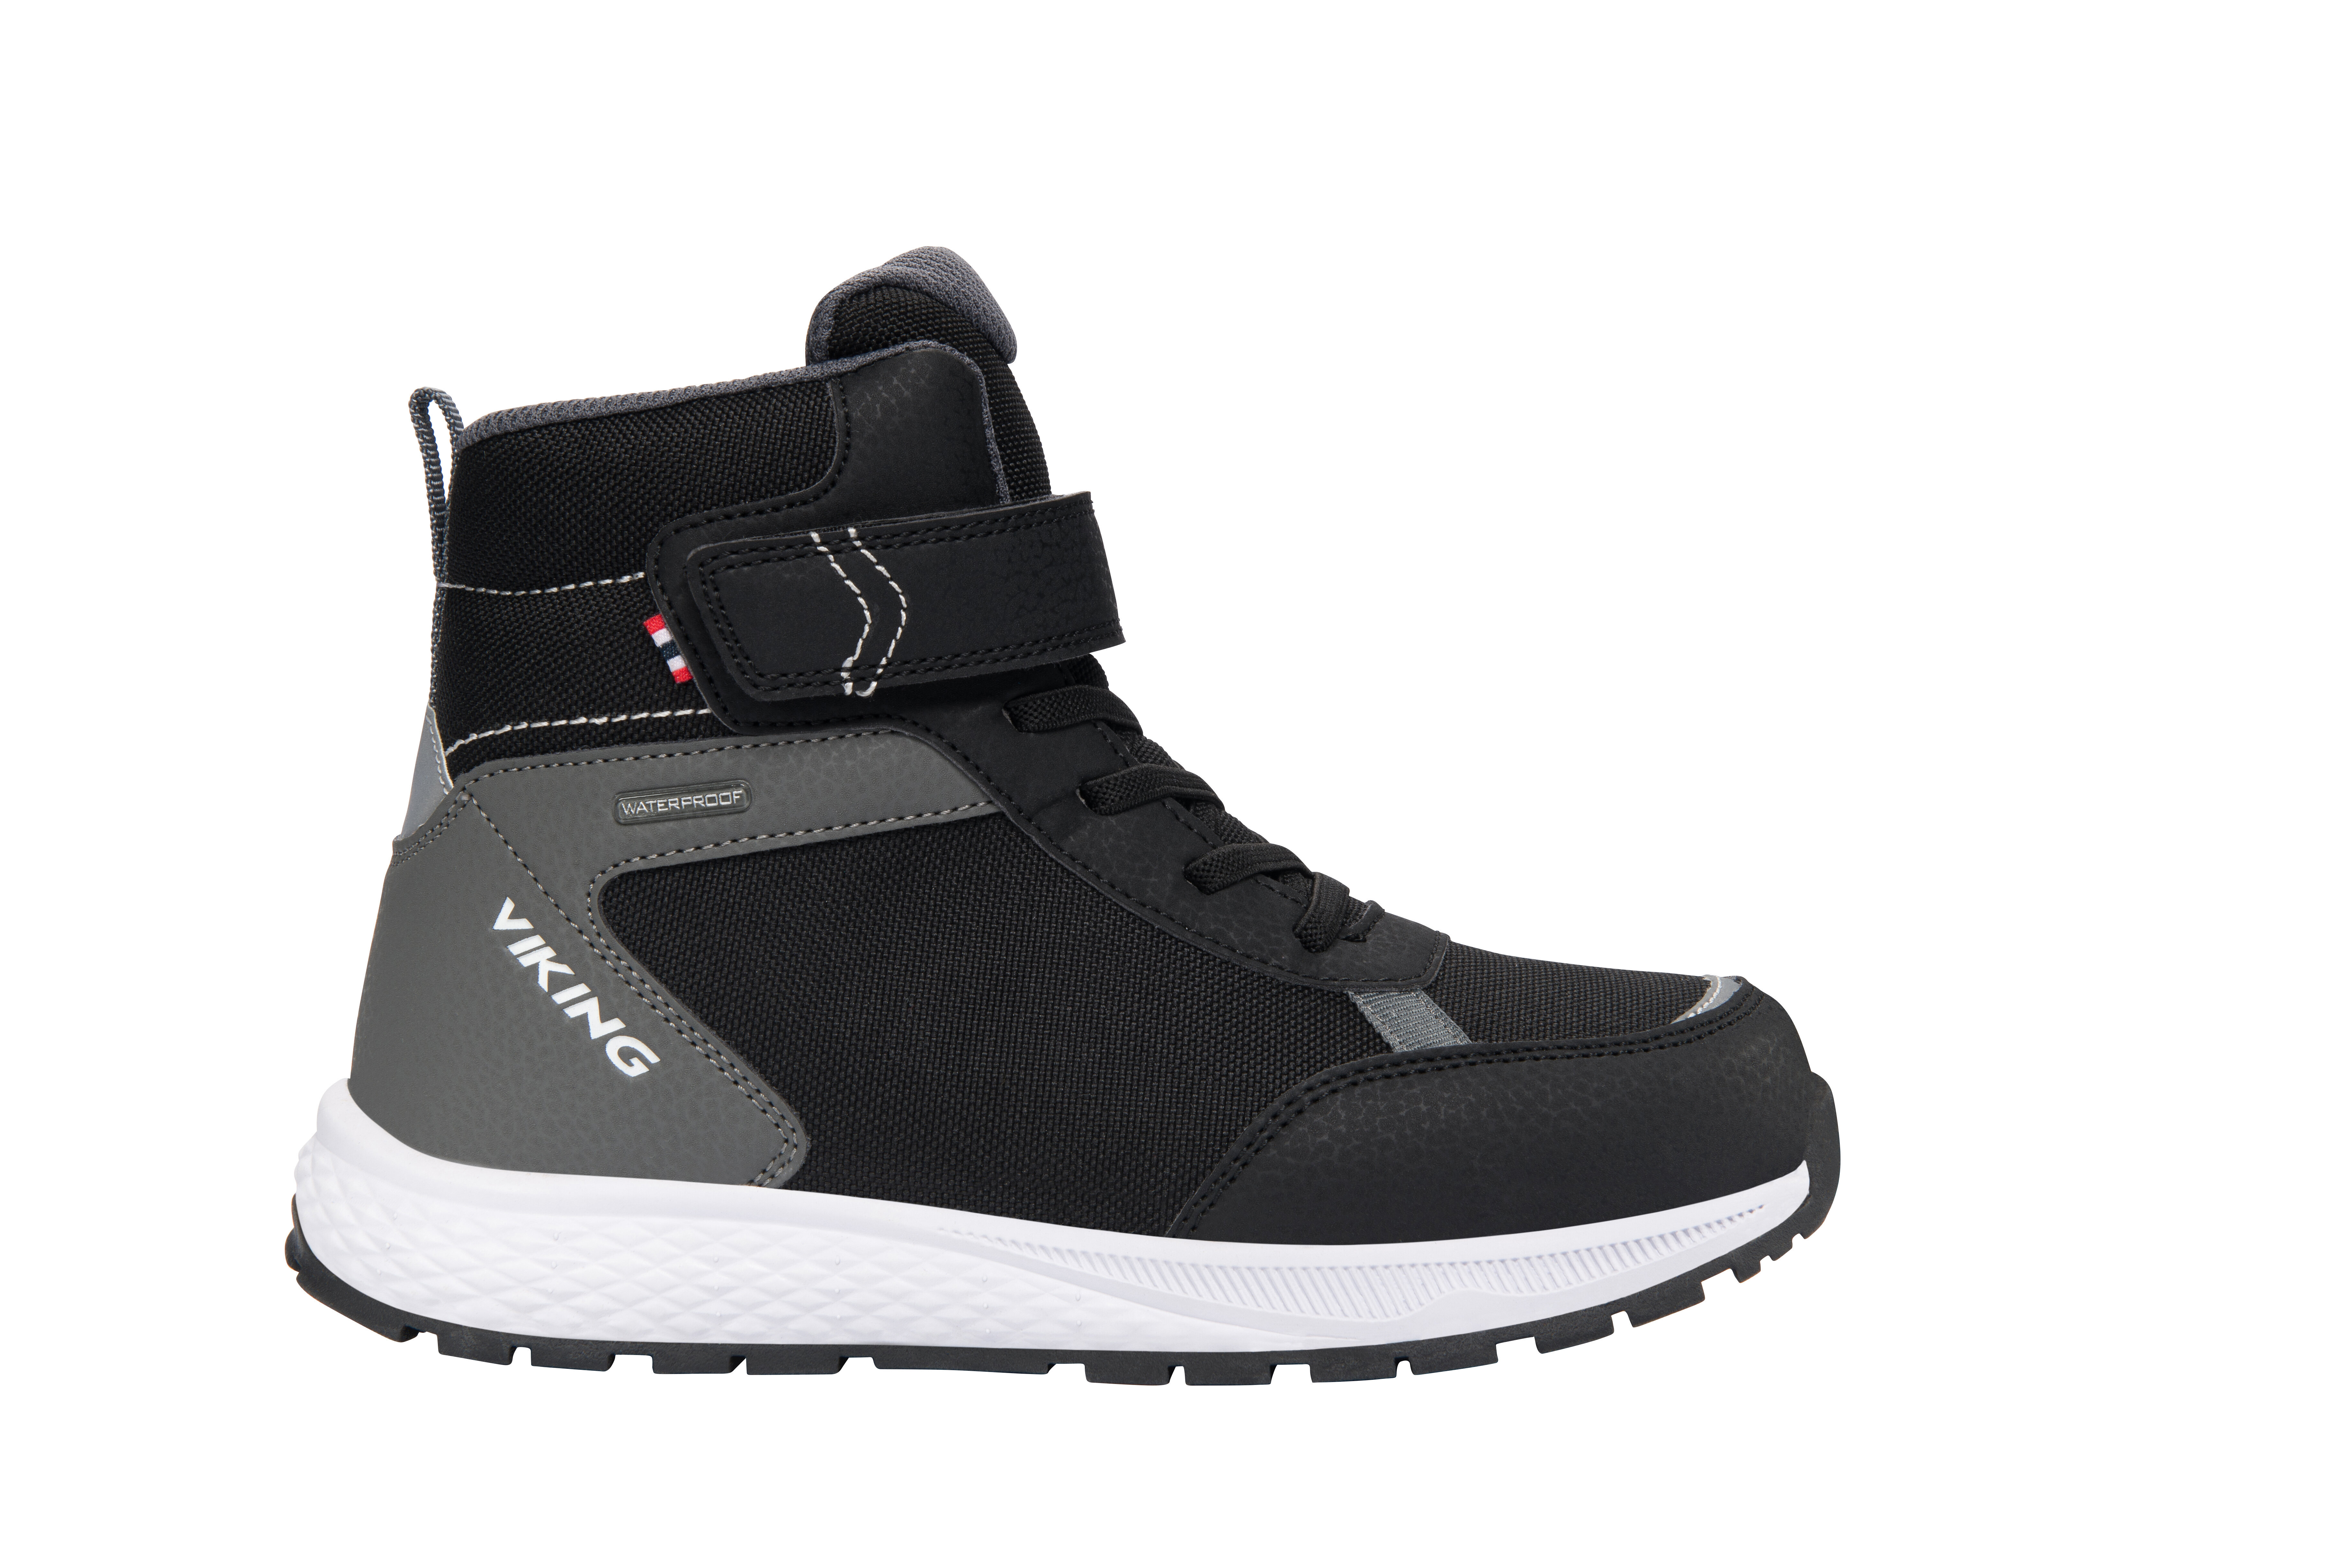 Viking jaunimo žieminiai batai EQUIP WARM WP 1V, juodai pilki kaina |  pigu.lt